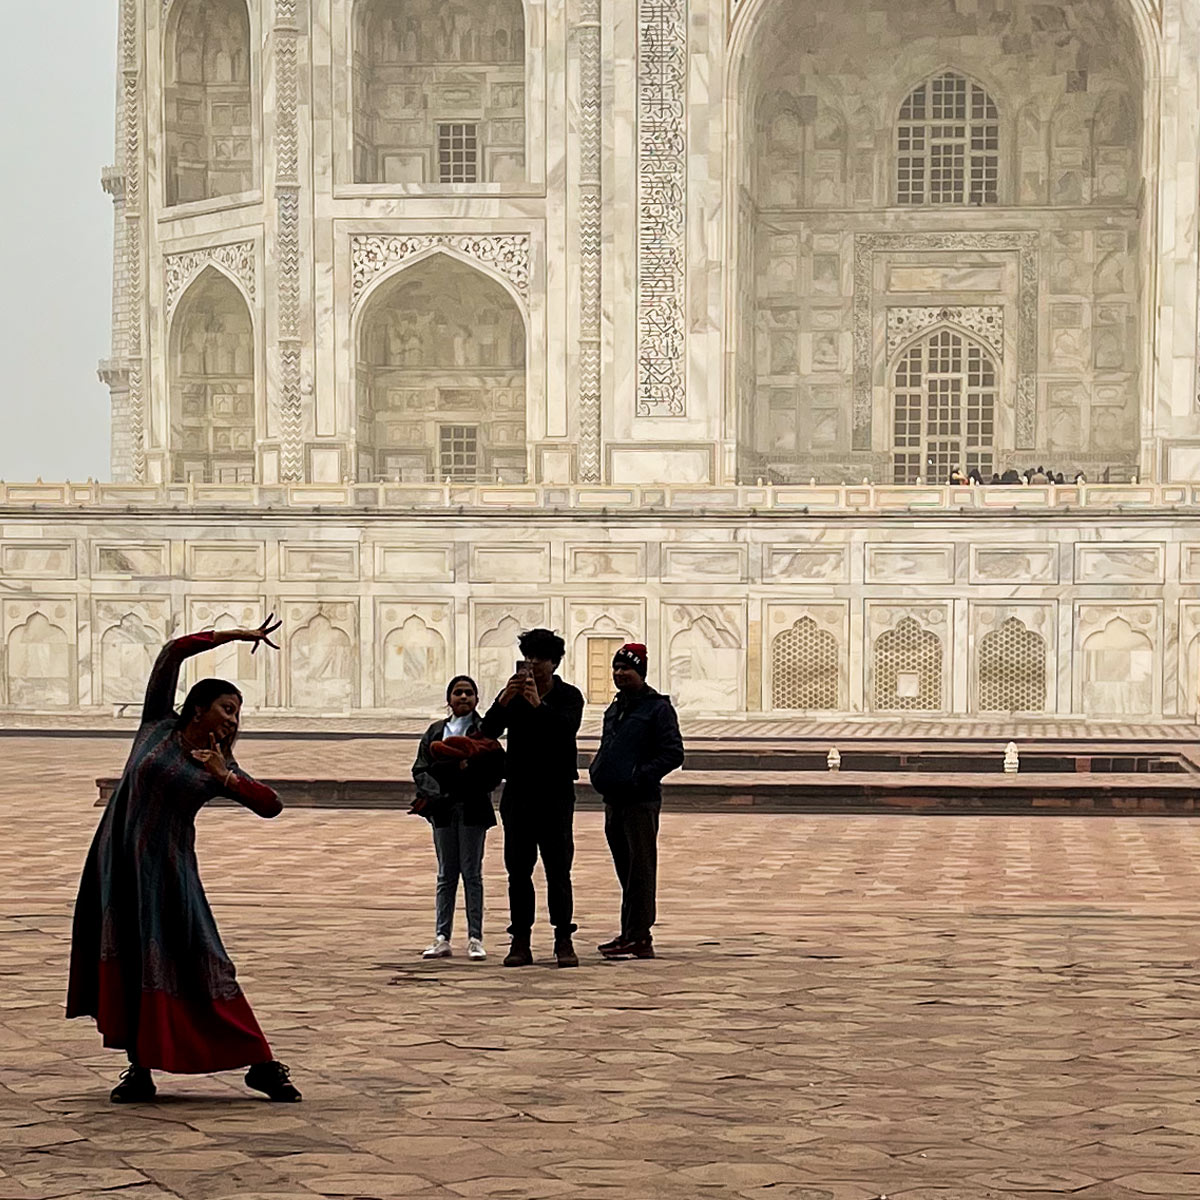 posing in front of the Taj Mahal